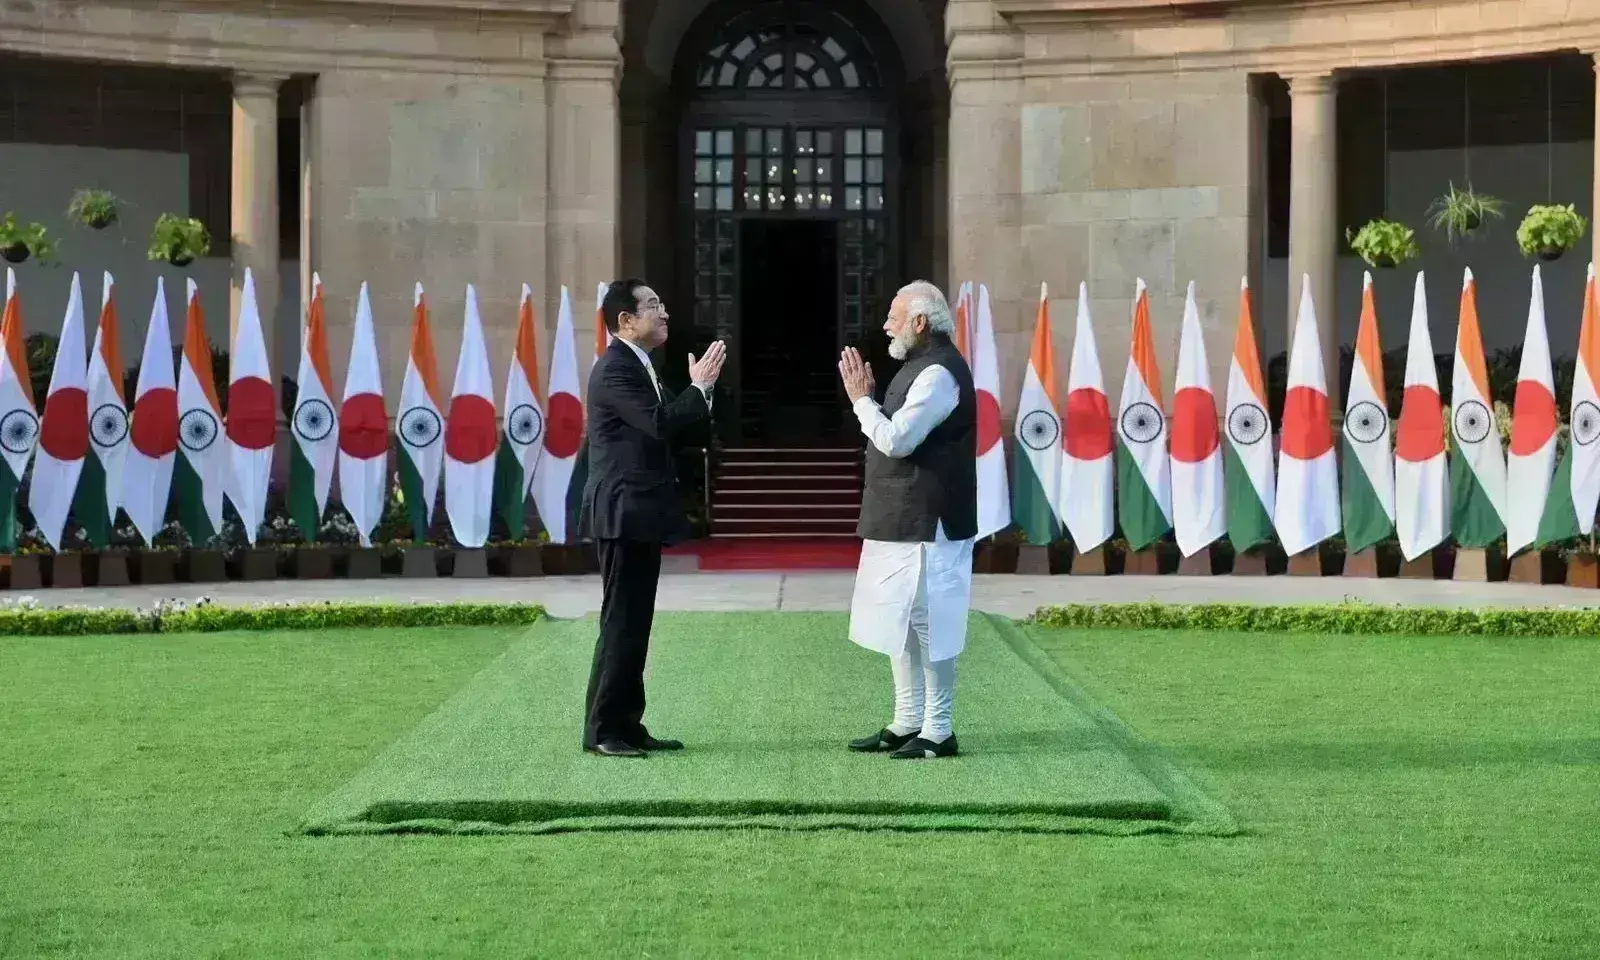 भारत और जापान के लगातार मजबूत होते आर्थिक एवं सामरिक रिश्ते